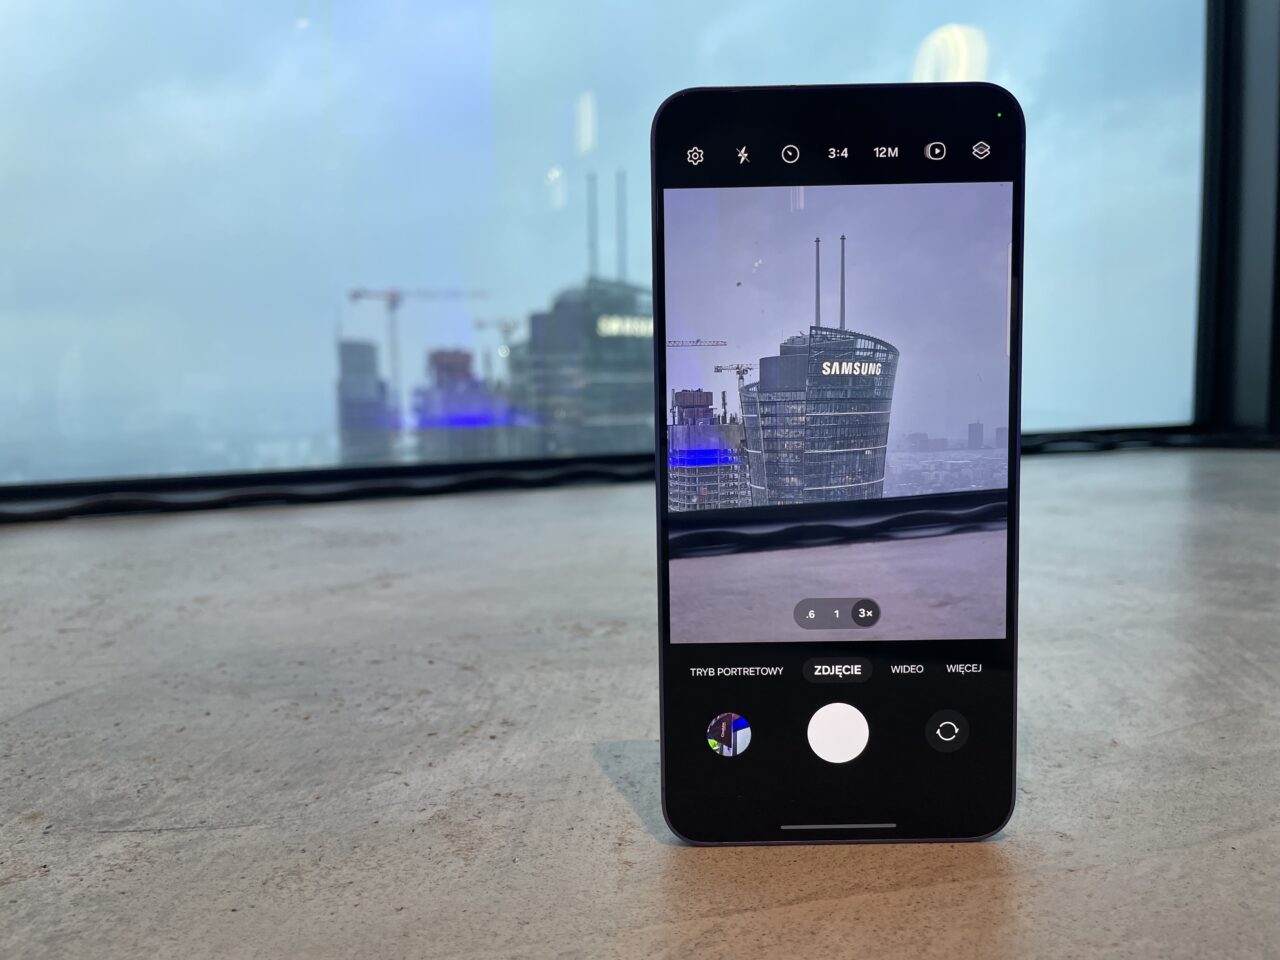 Smartfon leżący na blacie, z ekranem pokazującym widok na budynek z logo firmy Samsung, uchwycony przez ekran smartfona.